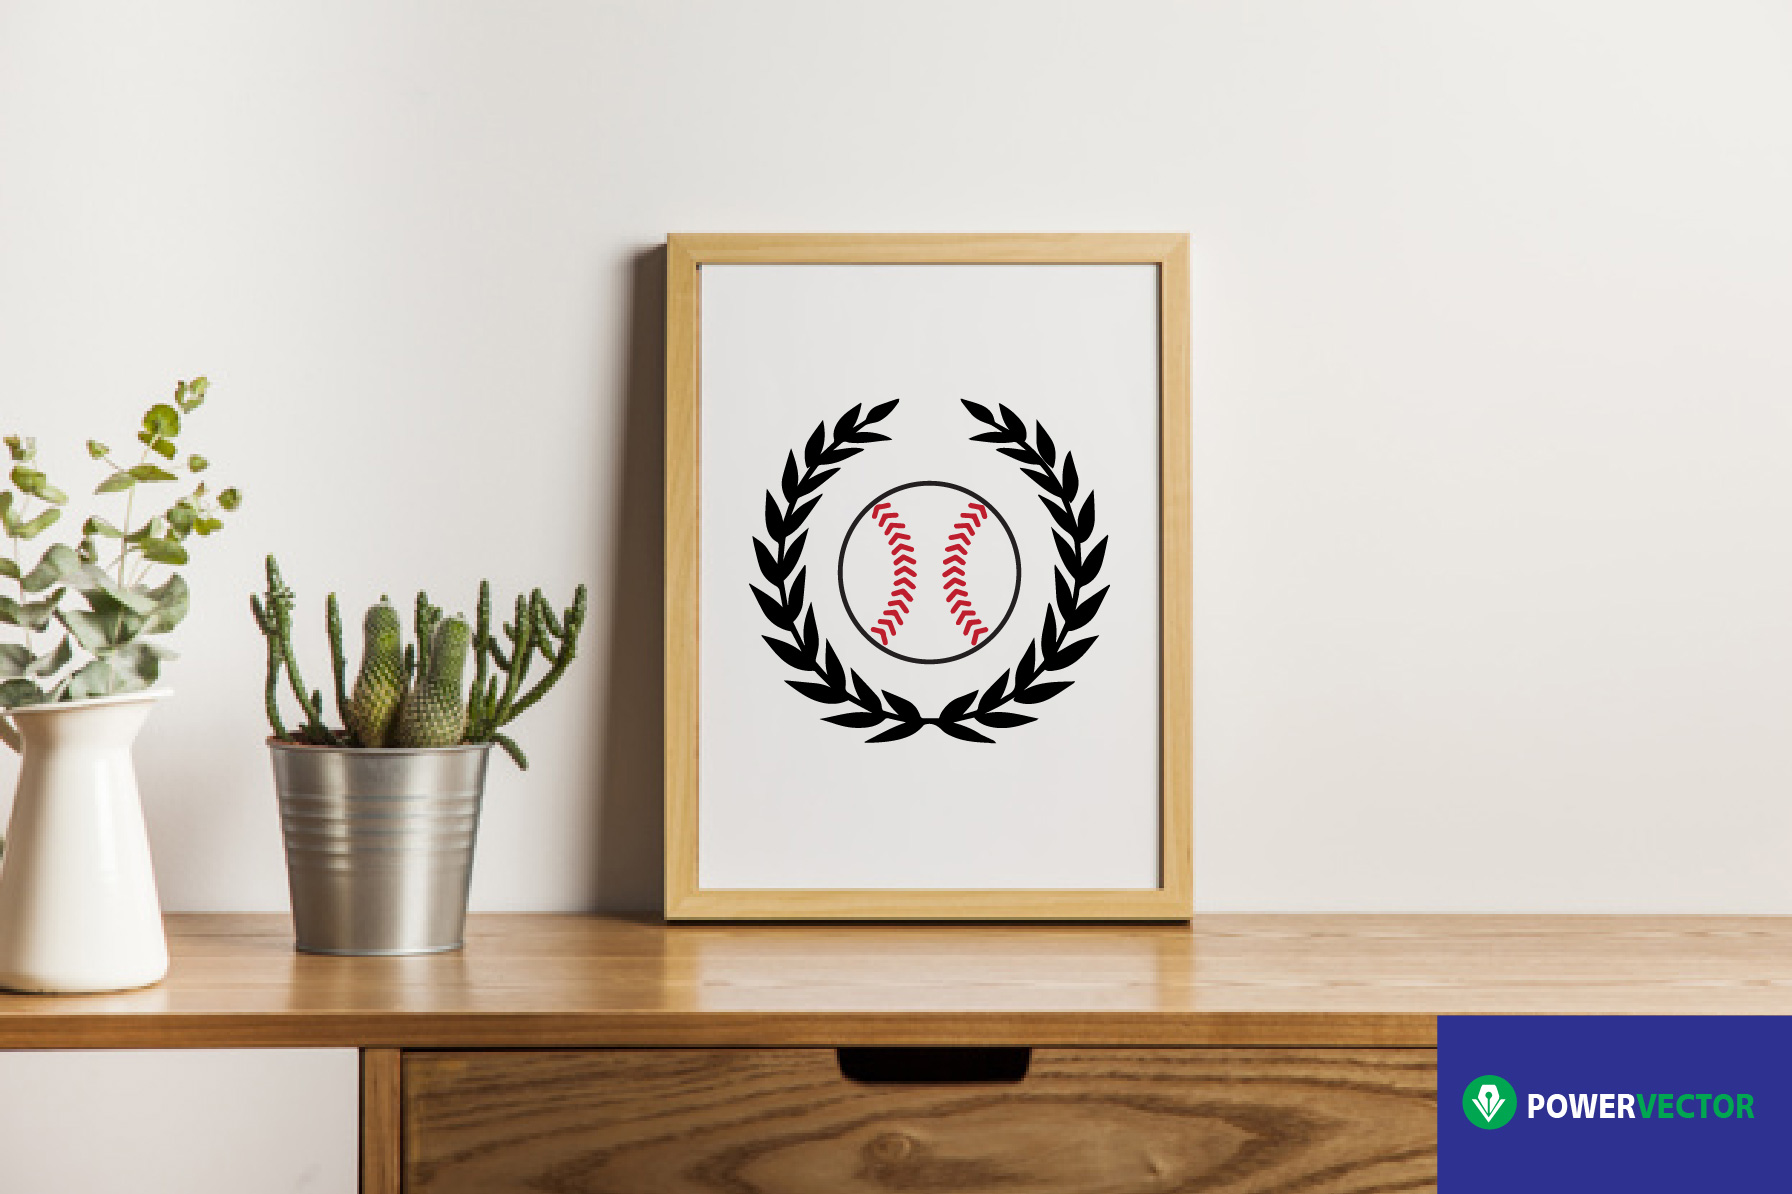 Download Svg File Baseball Team Logo Vector (98562) | SVGs | Design ...